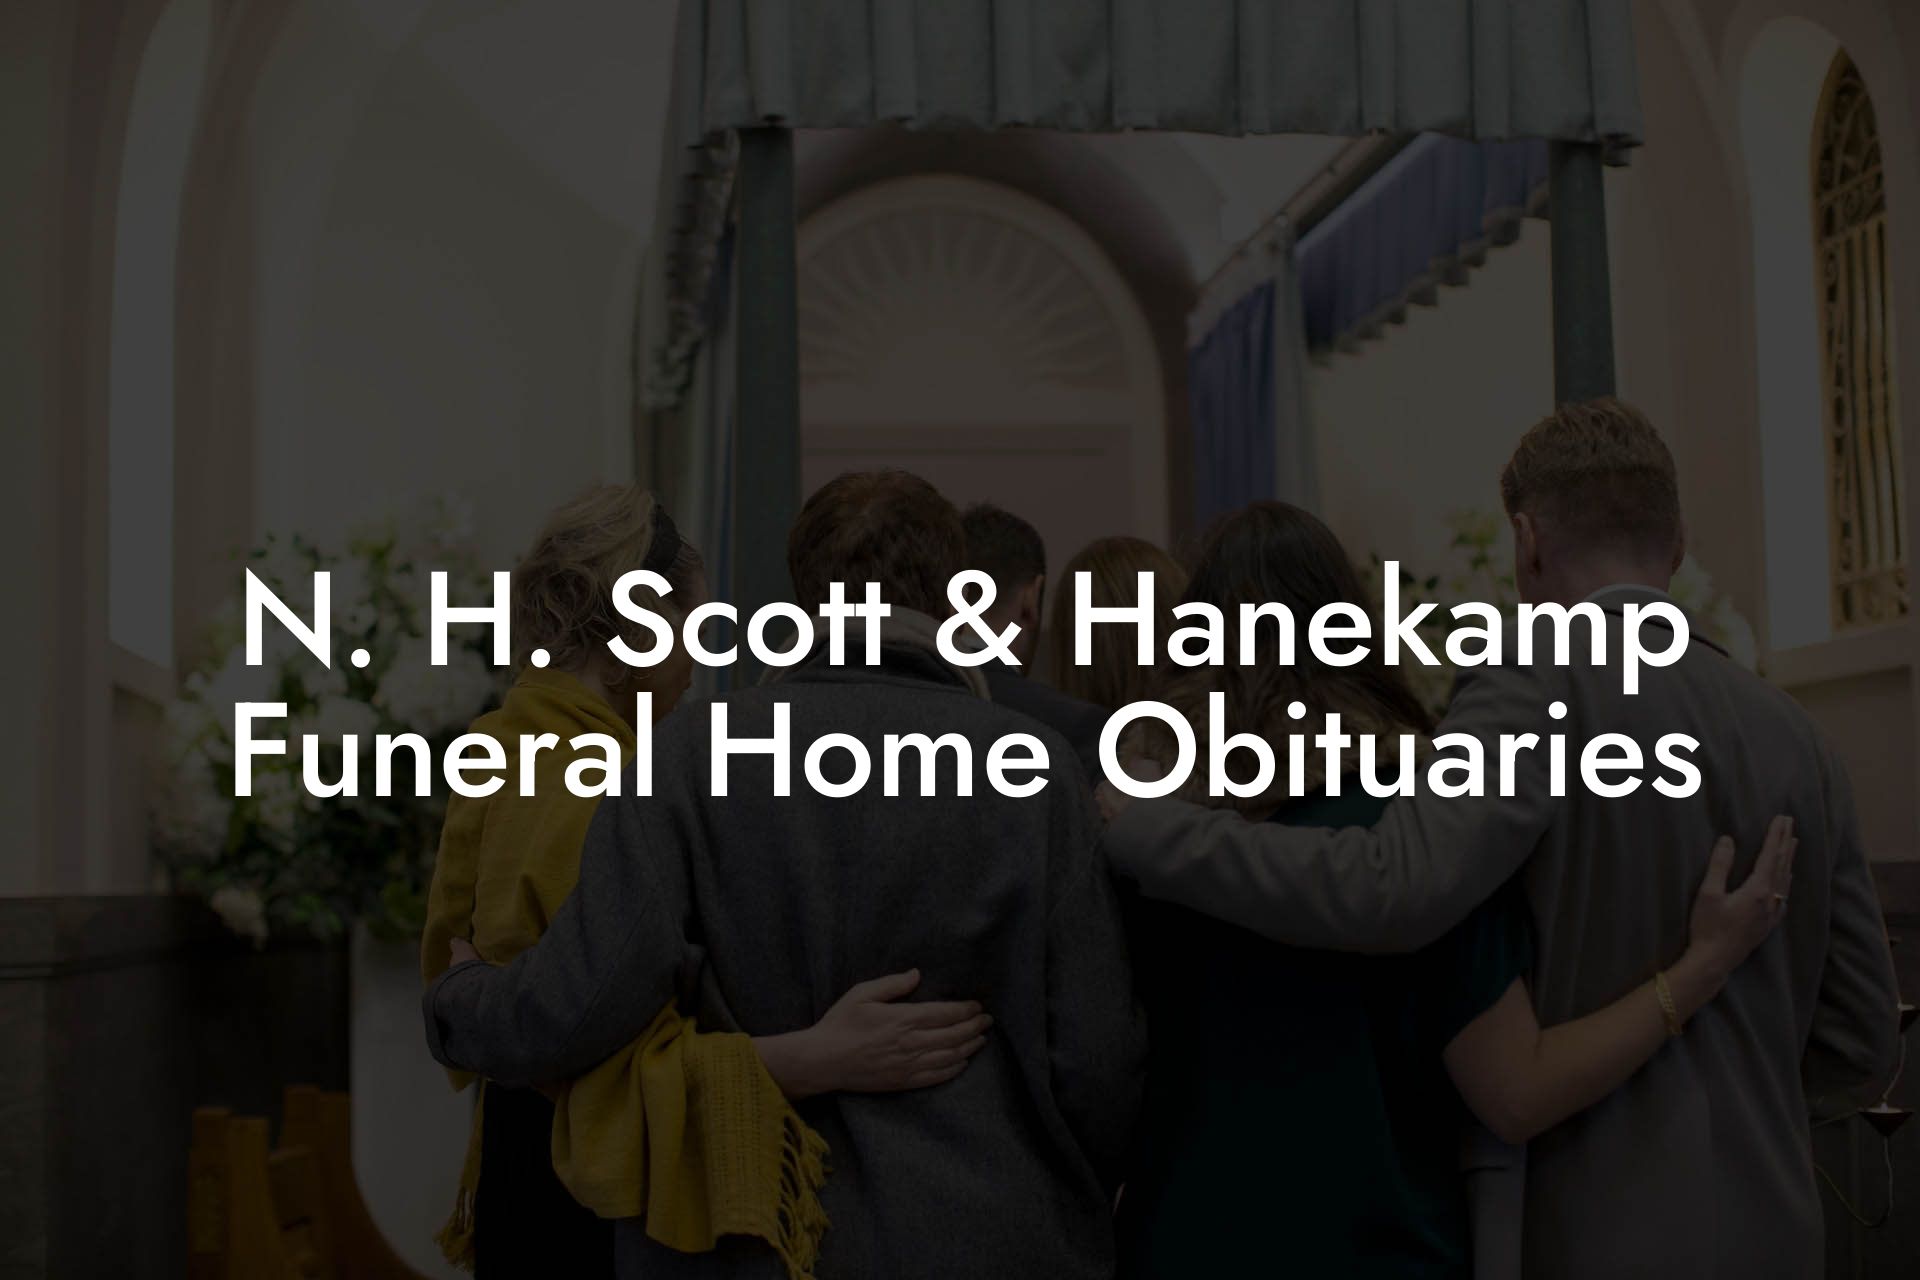 N. H. Scott & Hanekamp Funeral Home Obituaries